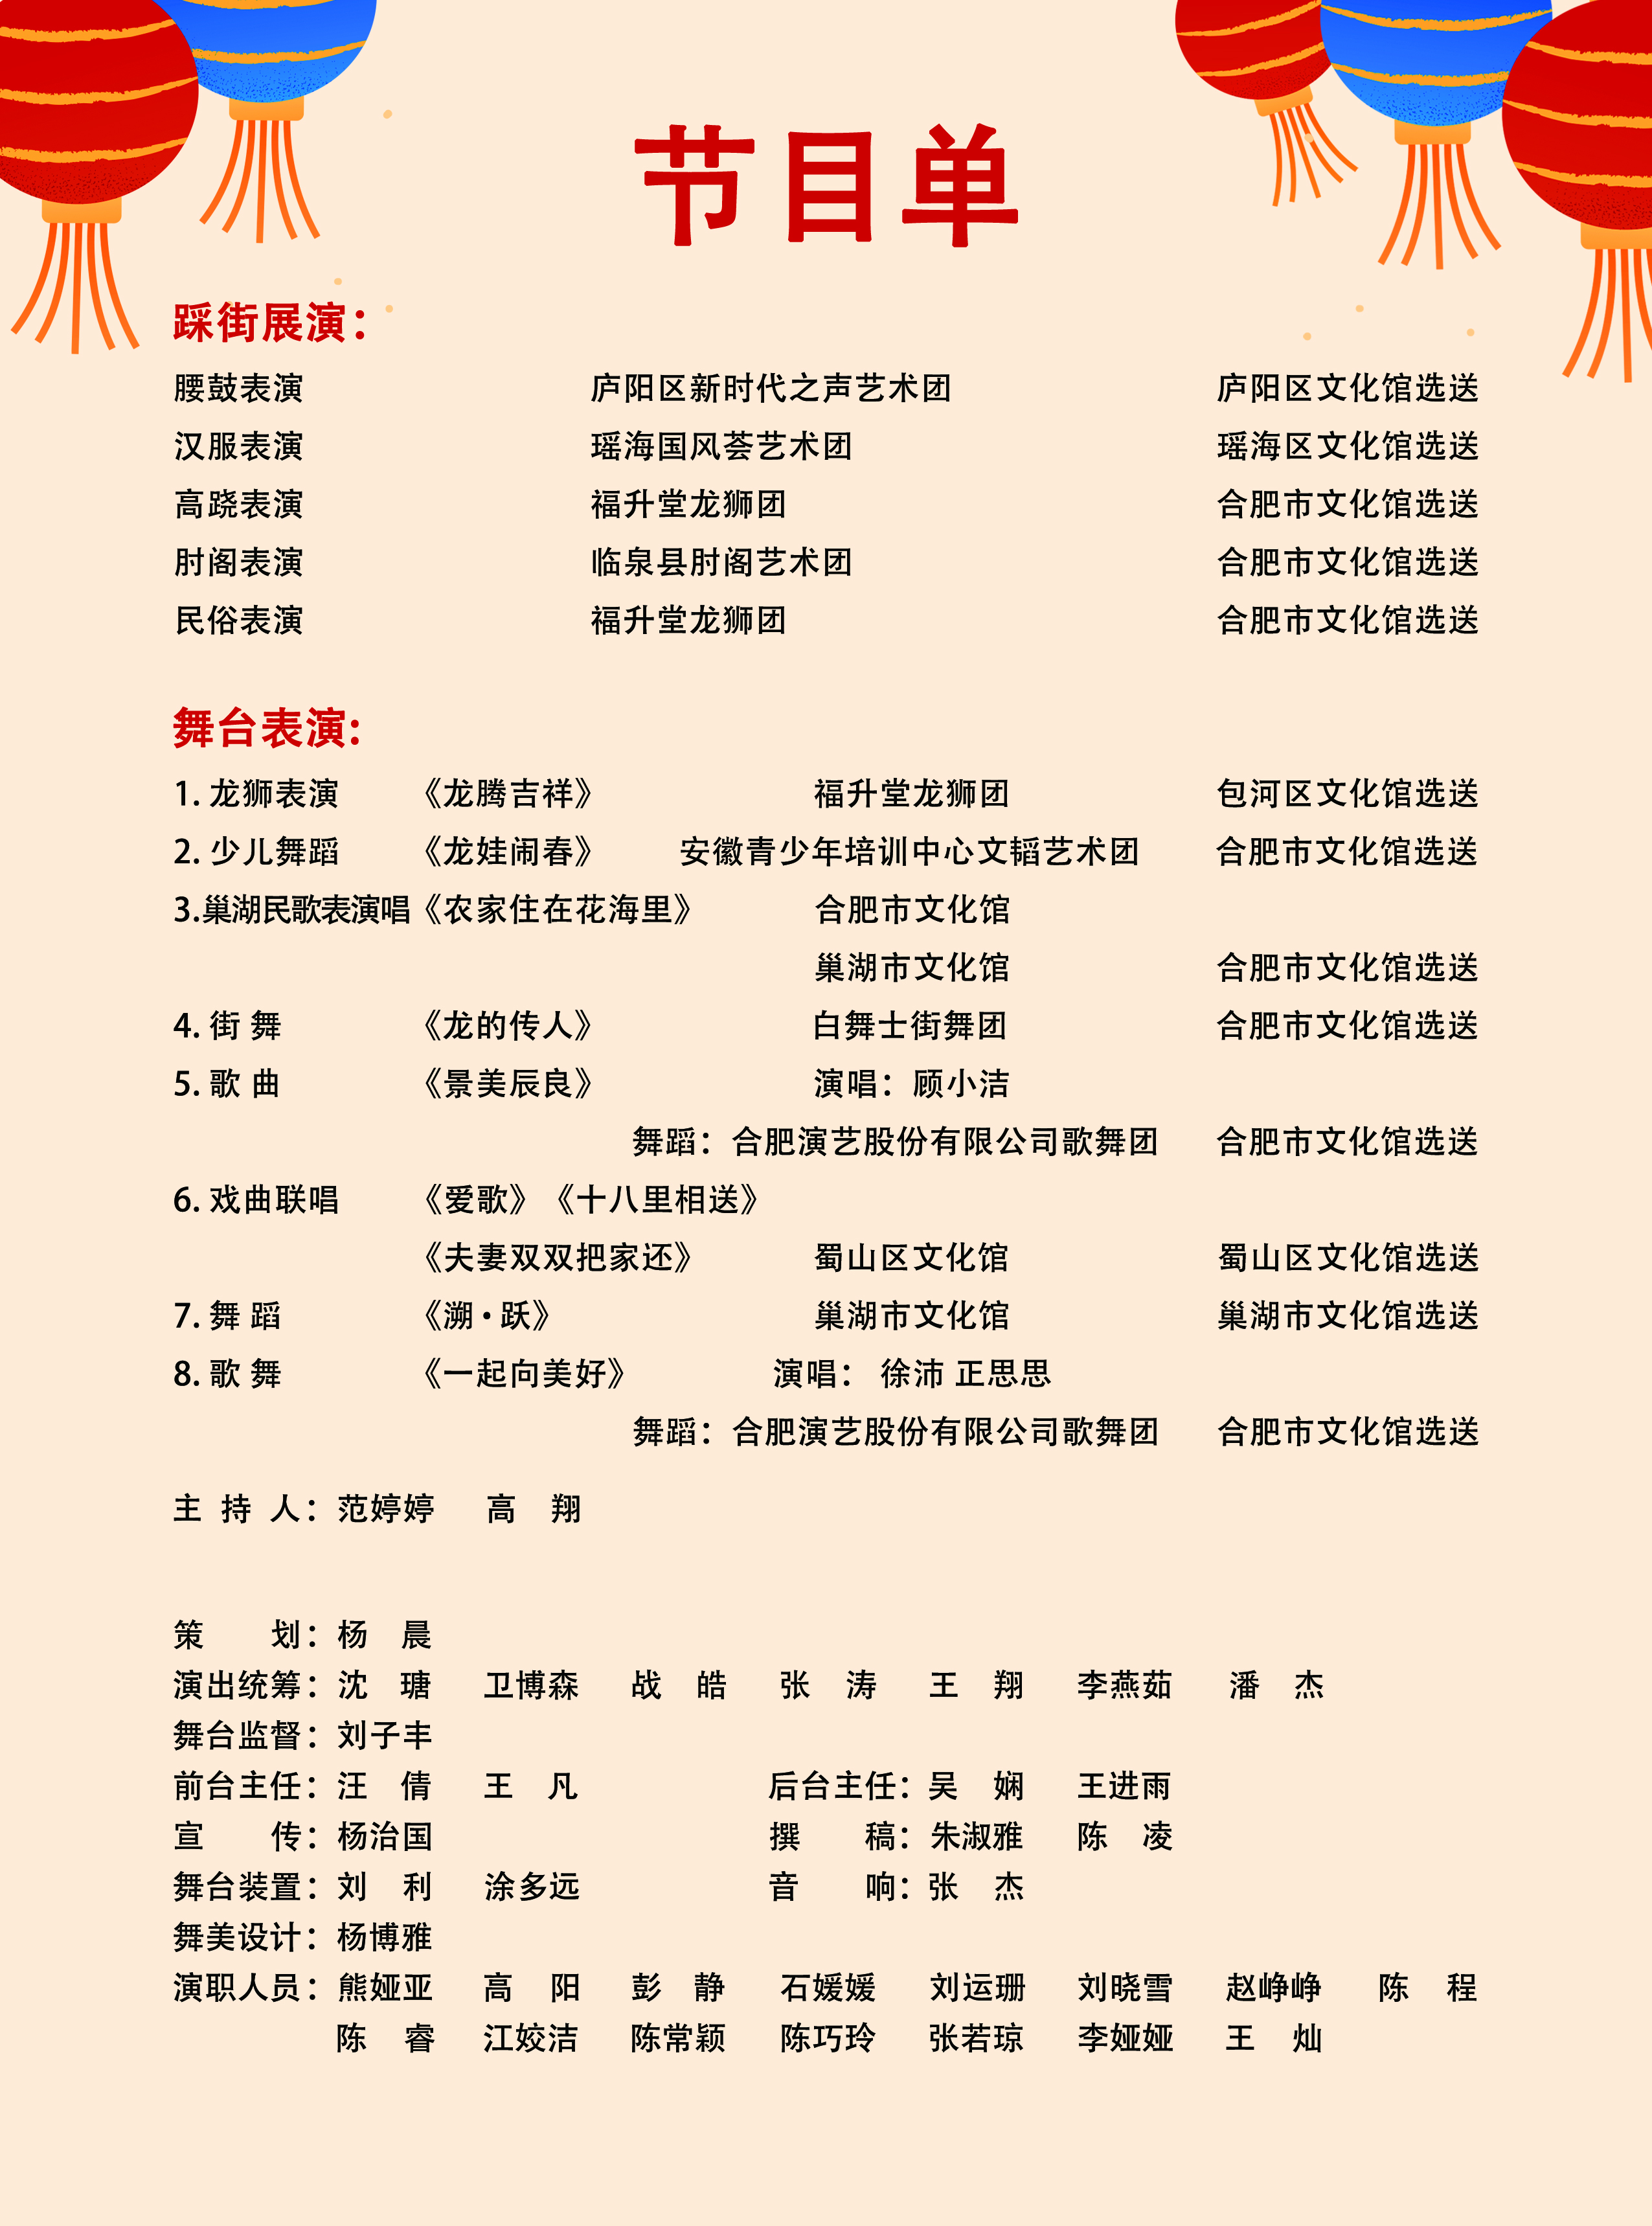 合肥市第三十届新春文化庙会启动仪式暨文艺演出节目单